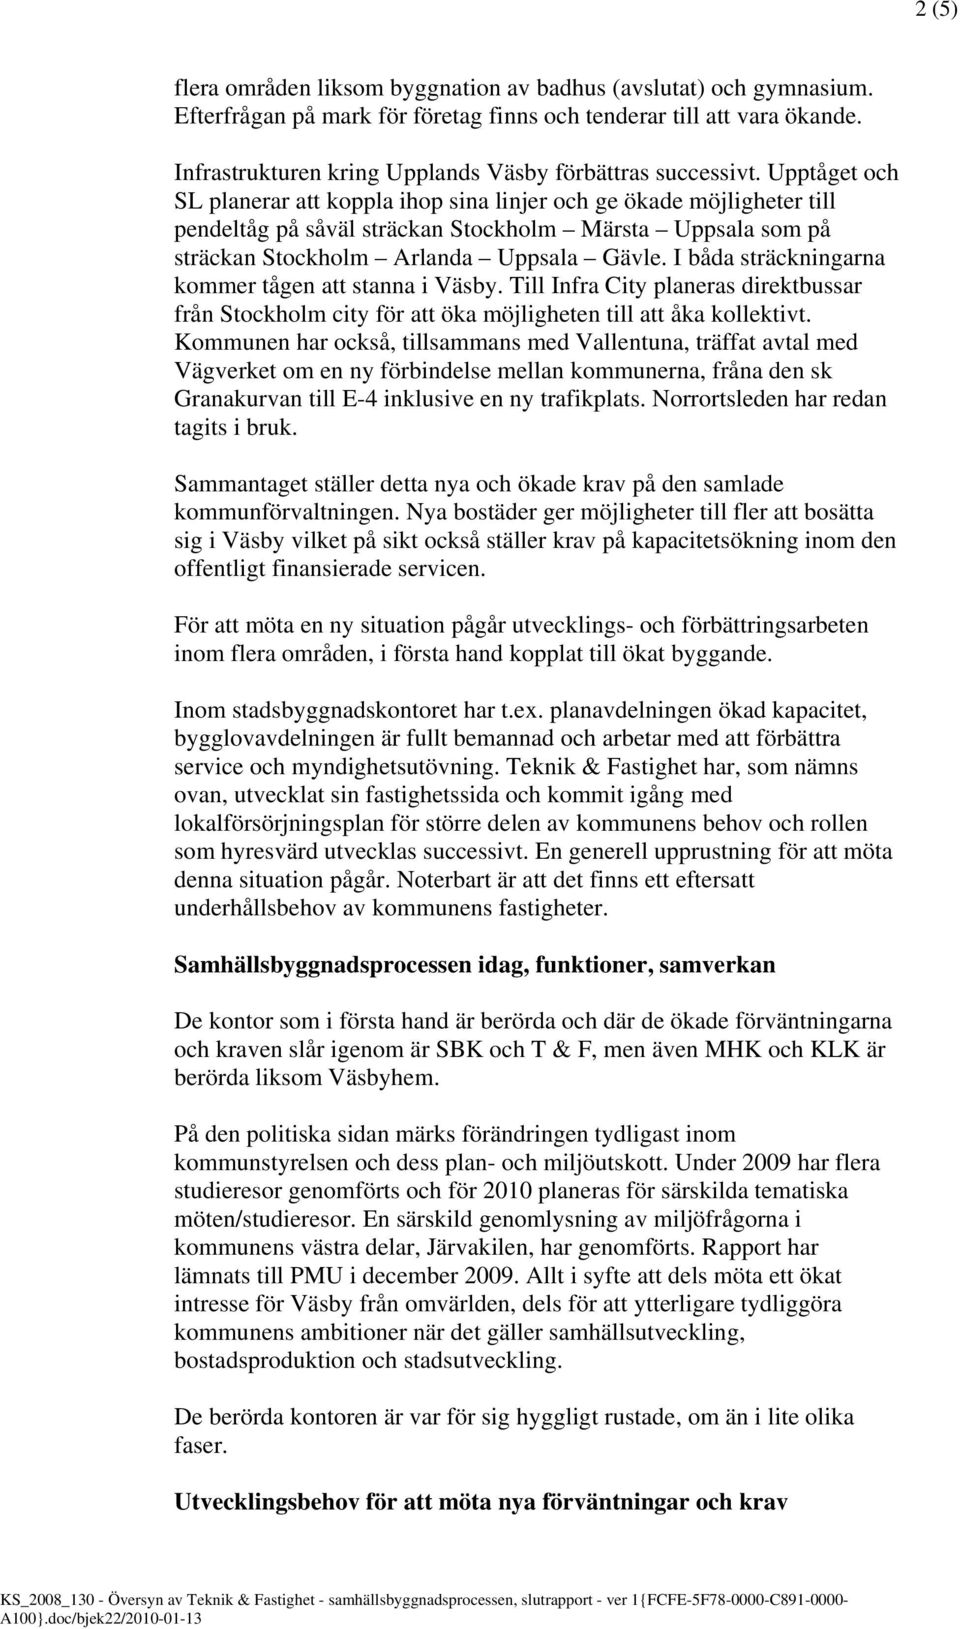 Upptåget och SL planerar att koppla ihop sina linjer och ge ökade möjligheter till pendeltåg på såväl sträckan Stockholm Märsta Uppsala som på sträckan Stockholm Arlanda Uppsala Gävle.